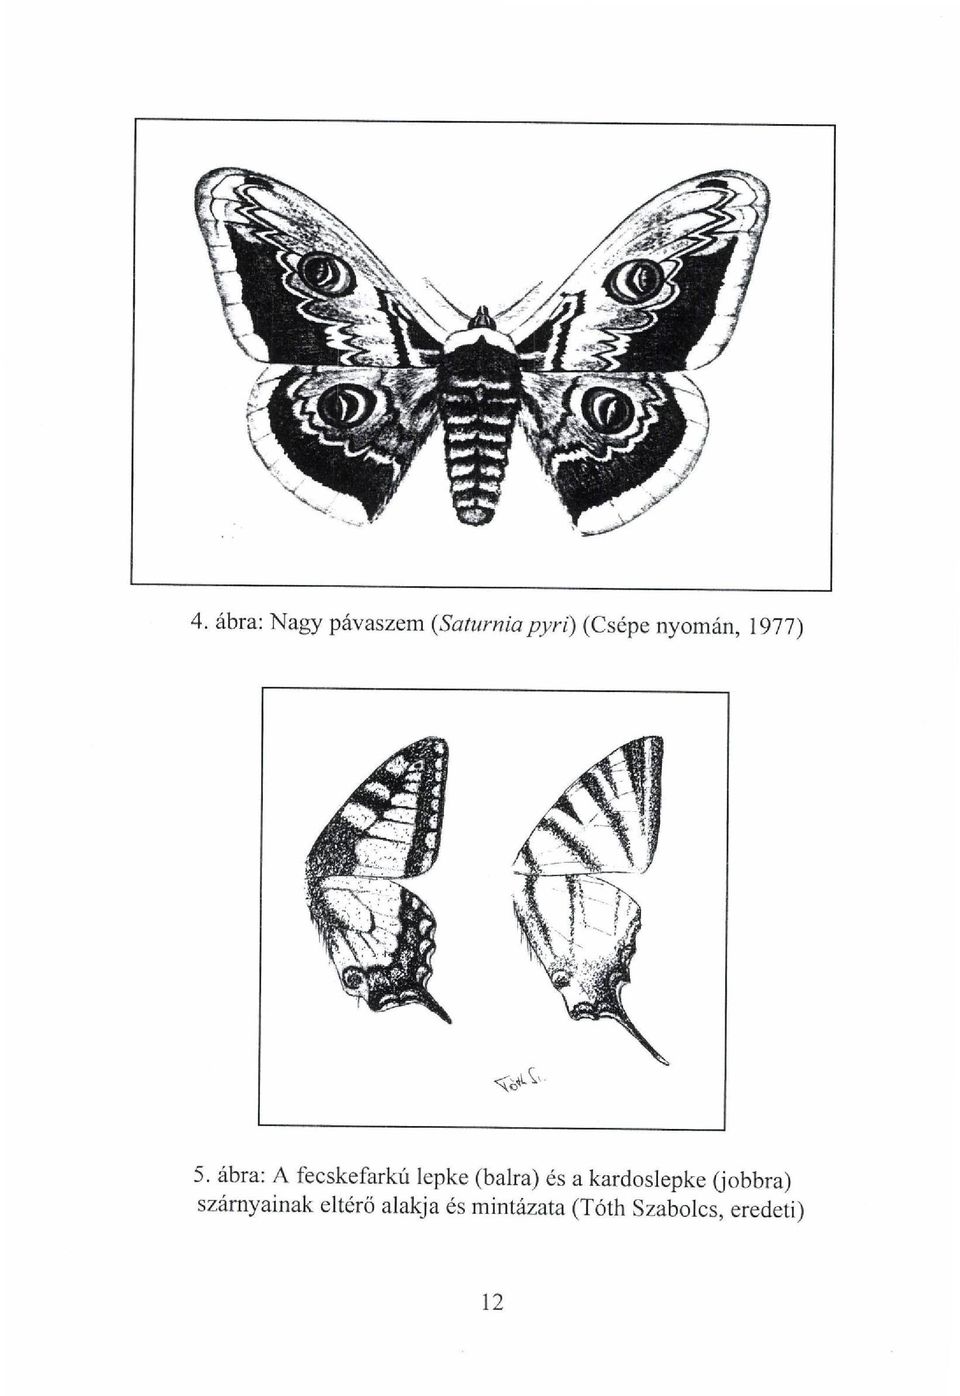 ábra: A fecskefarkú lepke (balra) és a